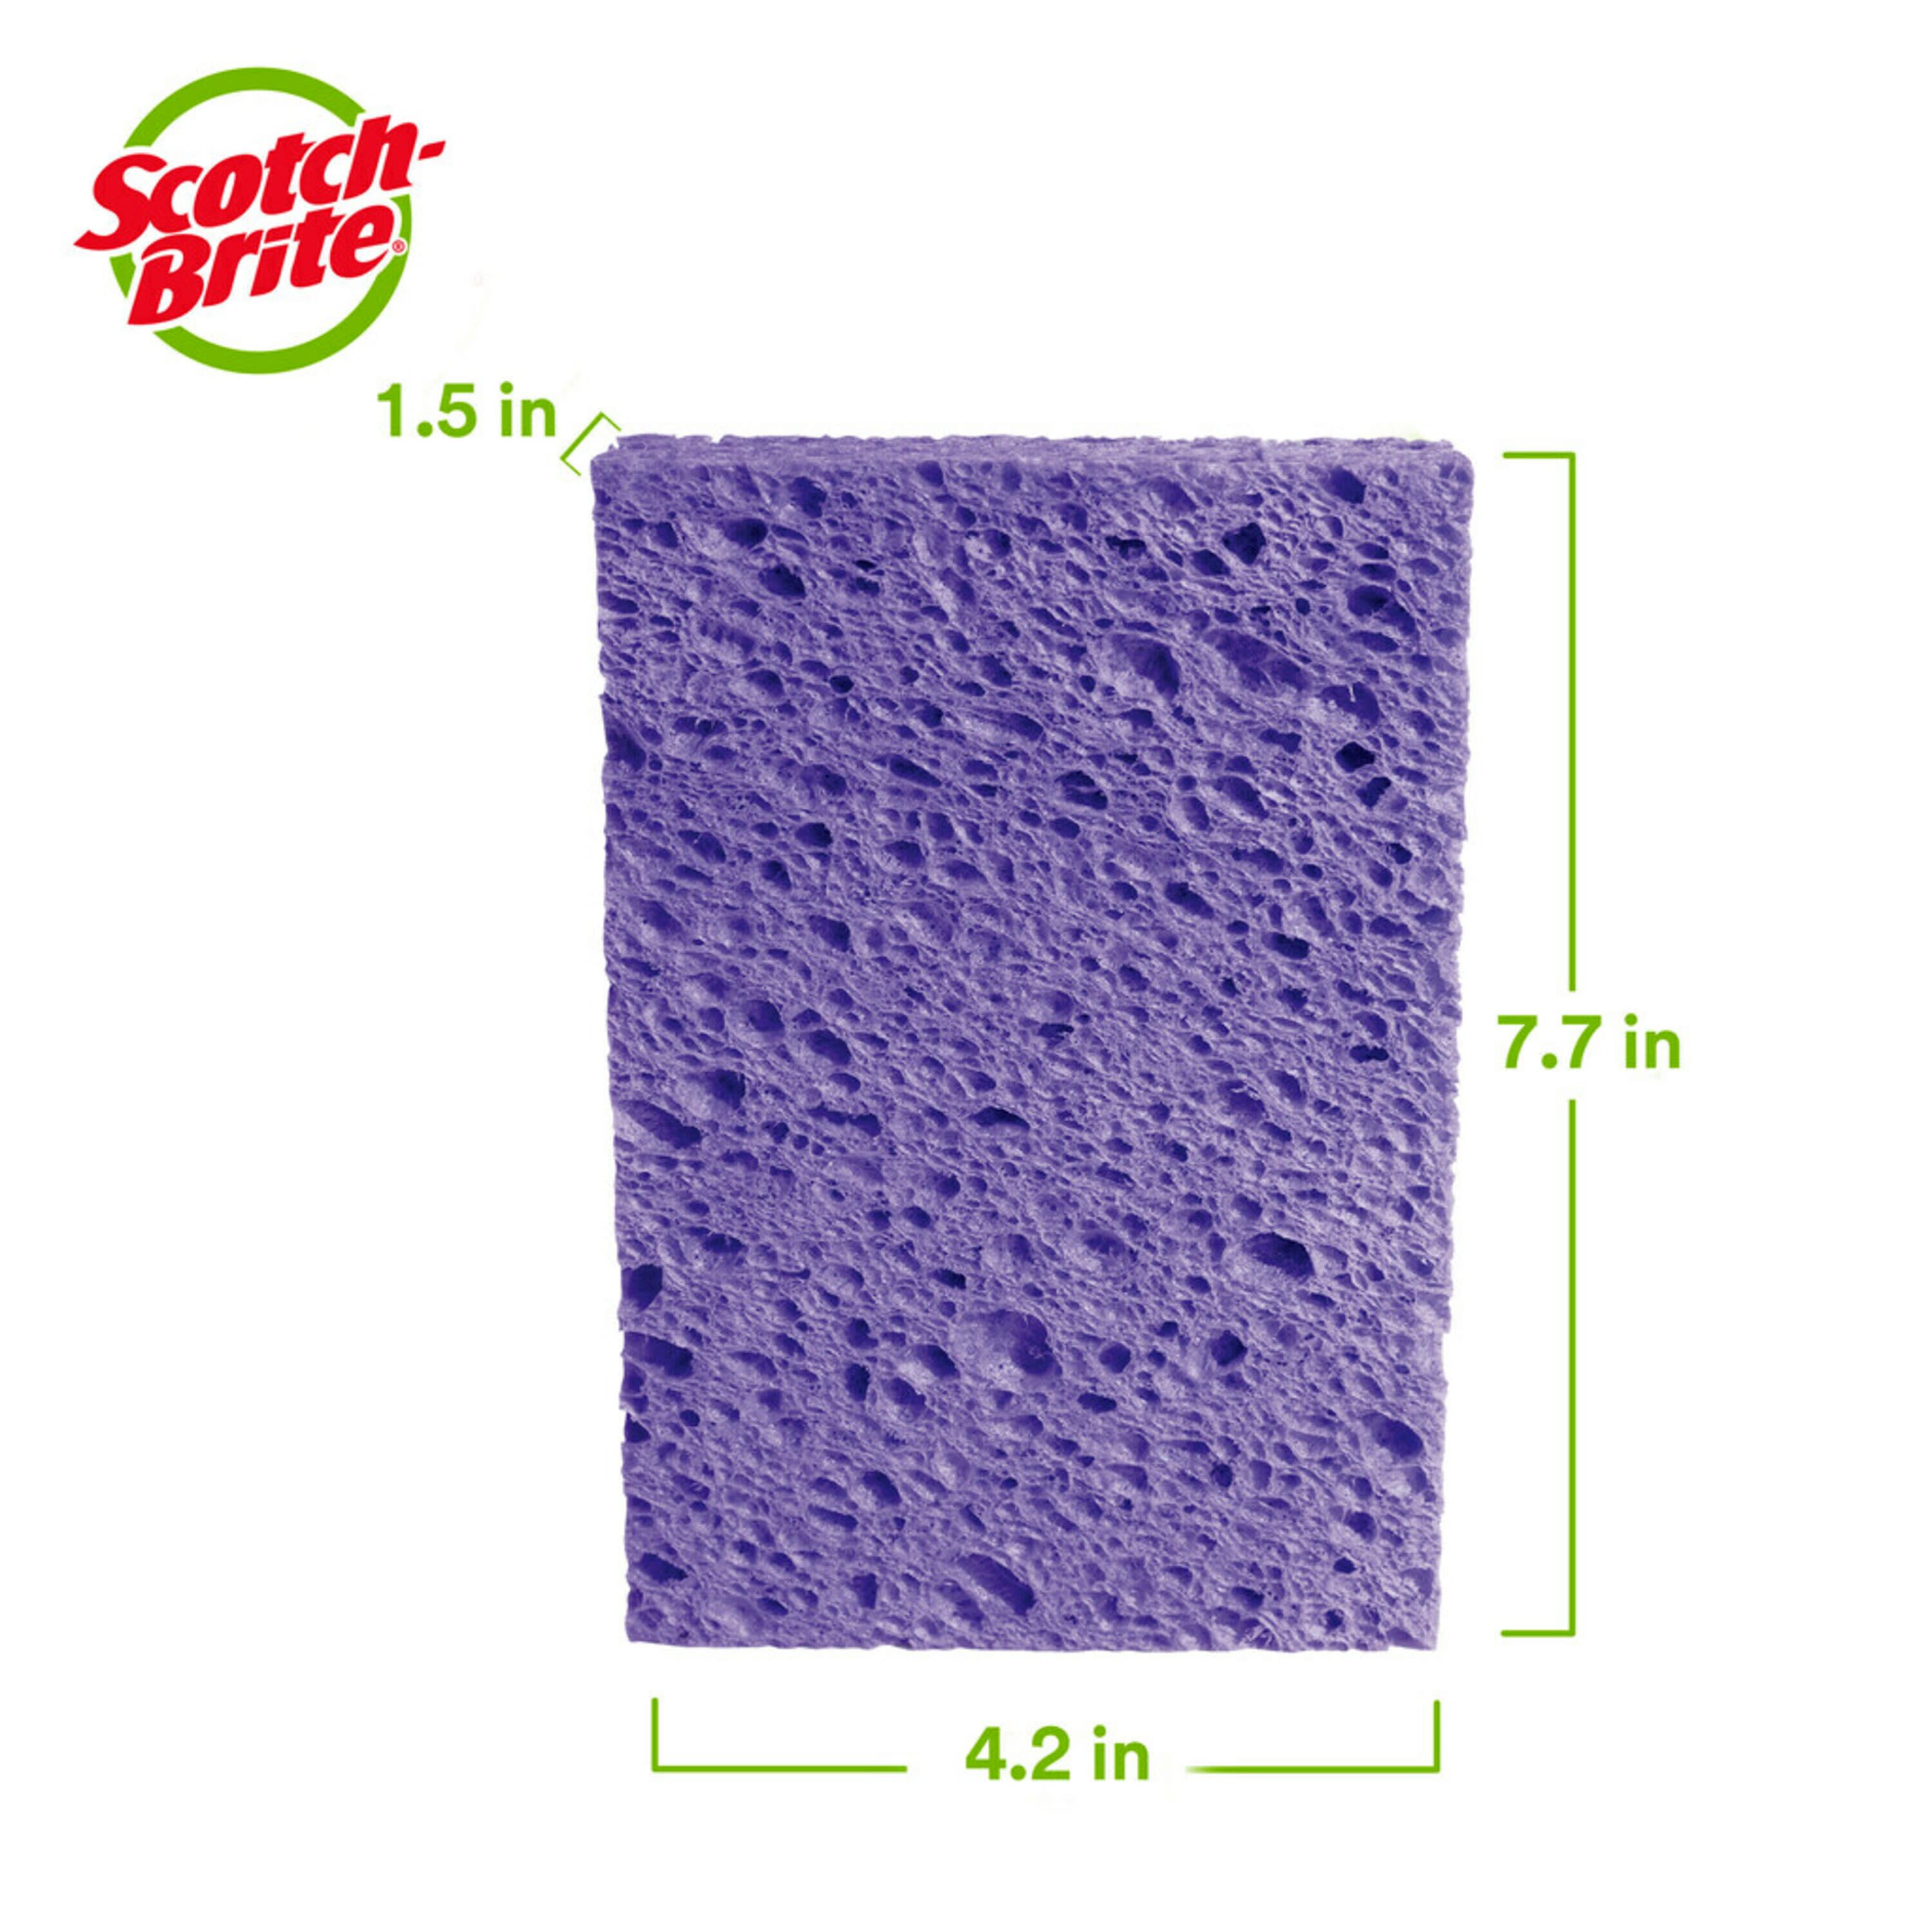 10 Bulk Fresh Start Cellulose Sponge 9Pack - at 